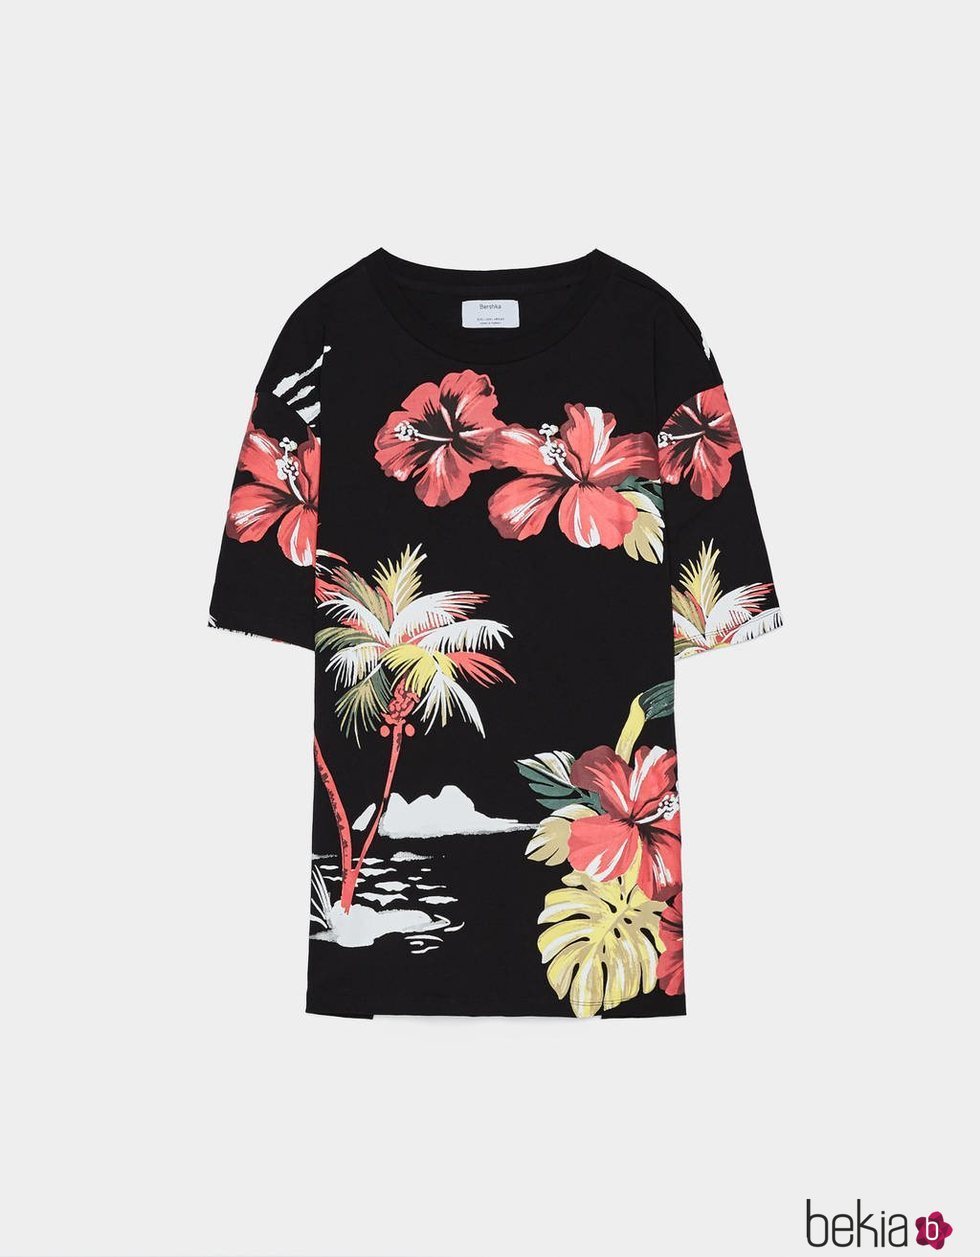 Camiseta estampado floral hawaiano Bershka